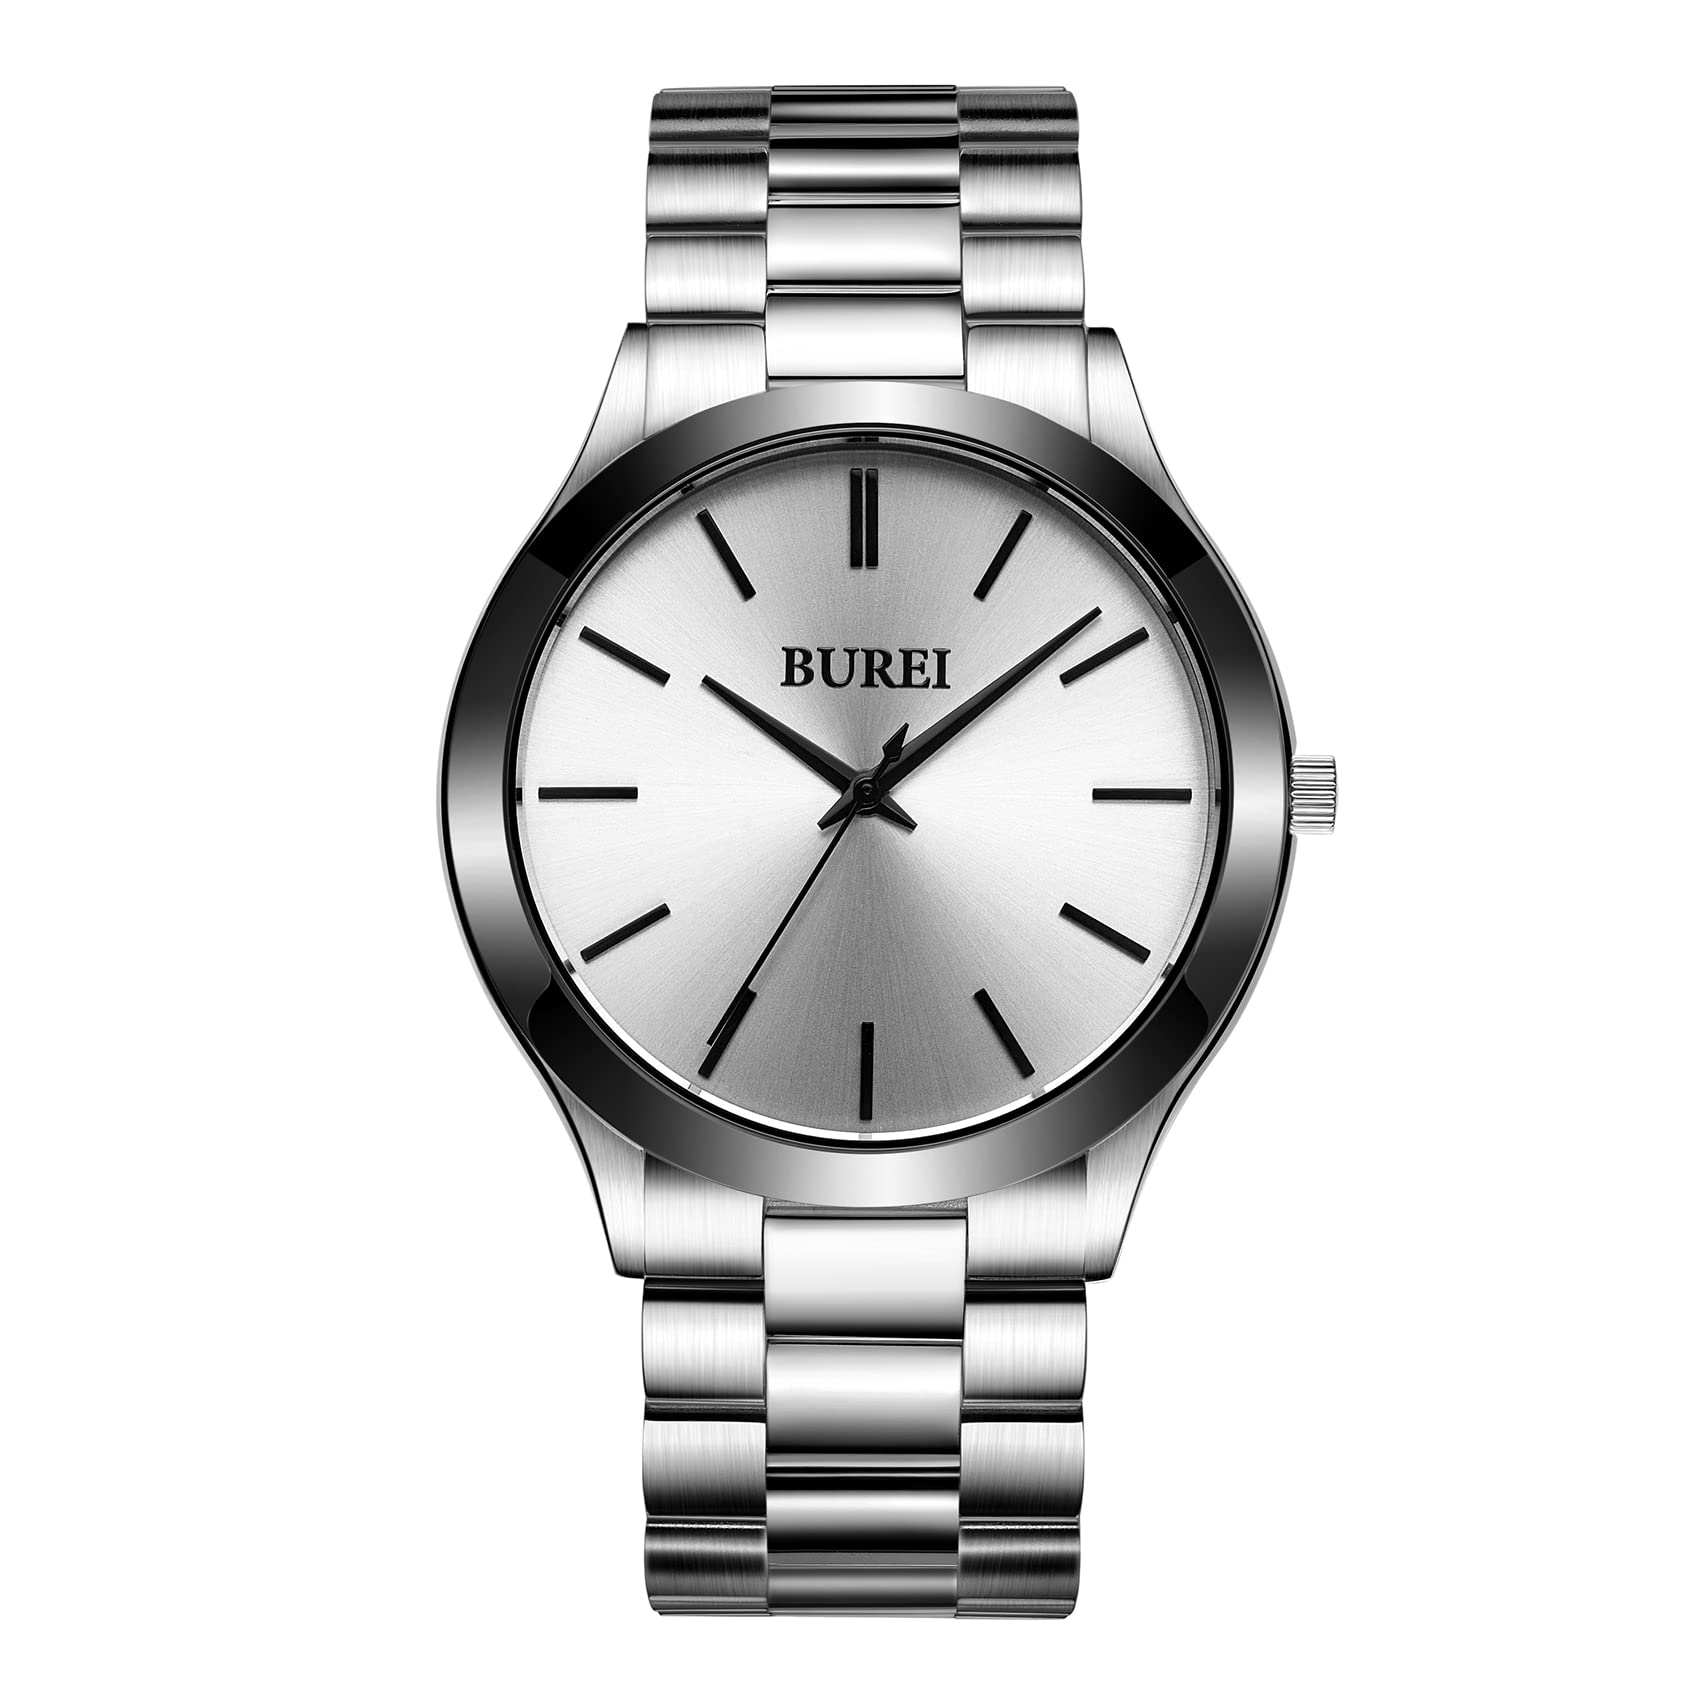 BUREI Fashion Minimalist Business Men's Wrist Watches Stainless Steel Waterproof Quartz Watch for Man